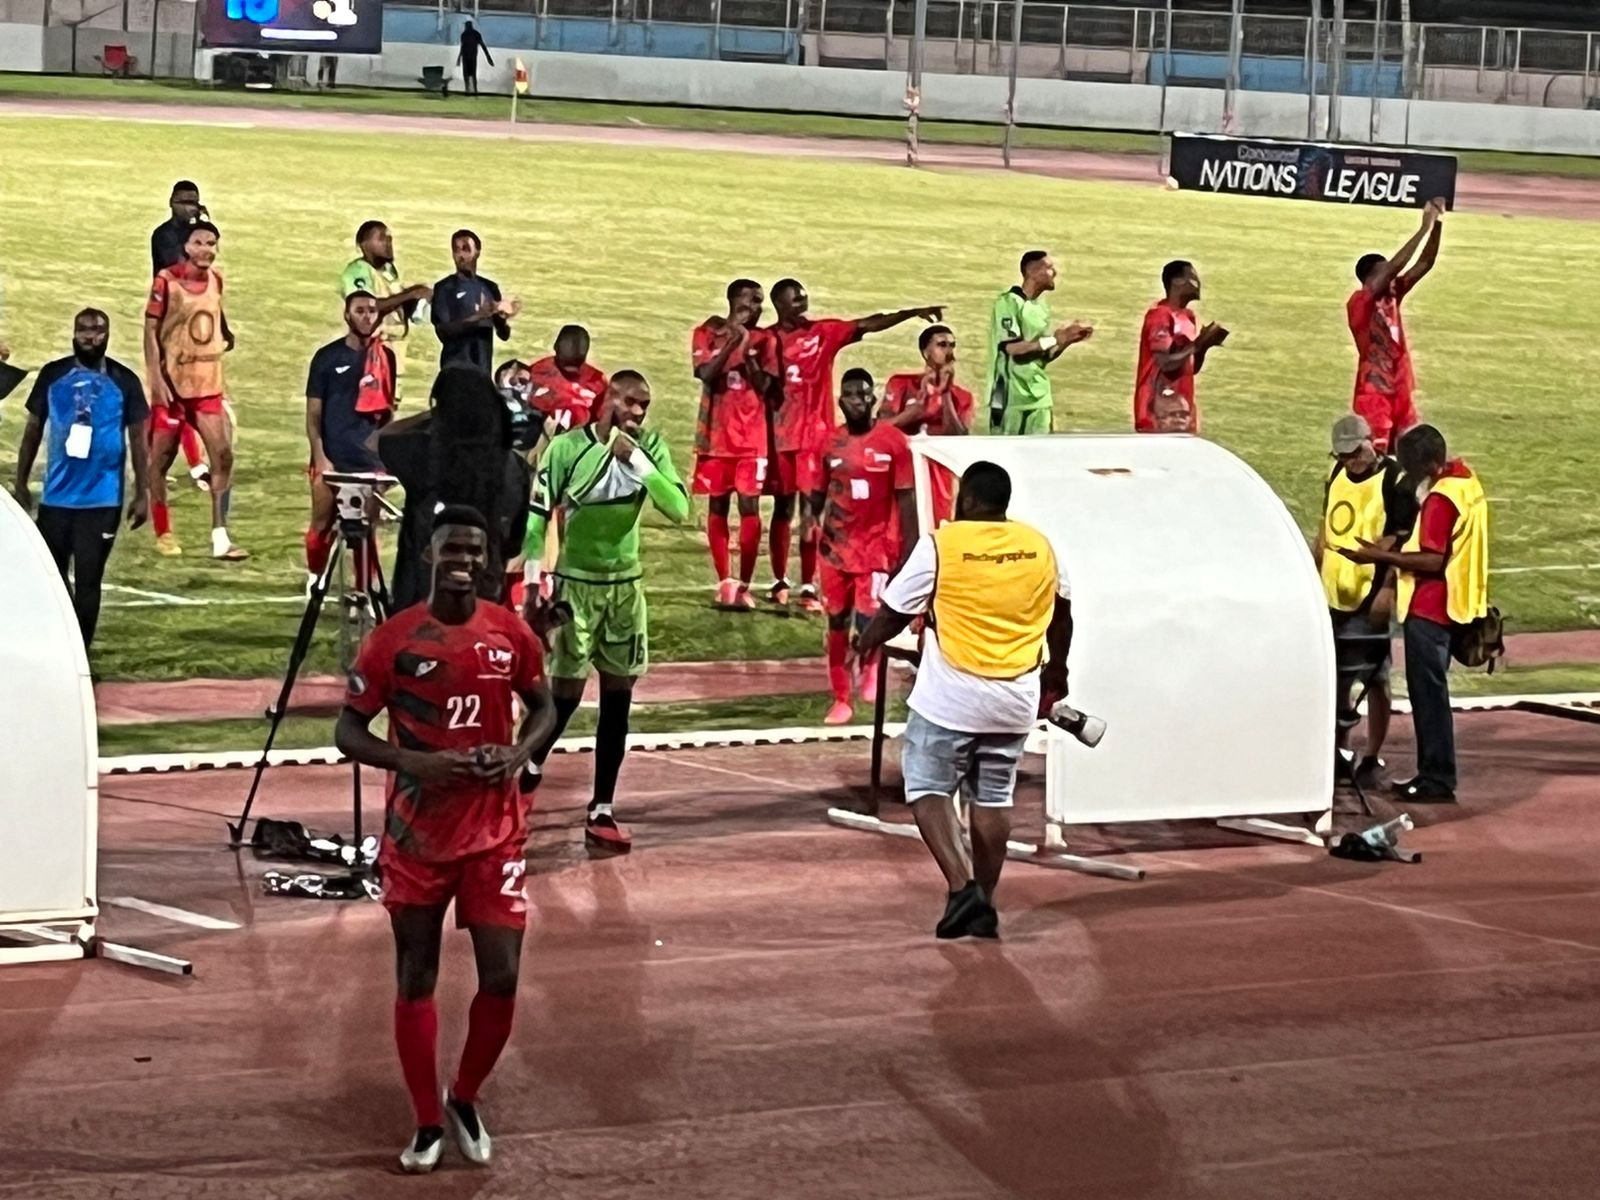     Ligue des Nations de la Concacaf : courte mais précieuse victoire de la Martinique contre Curaçao

